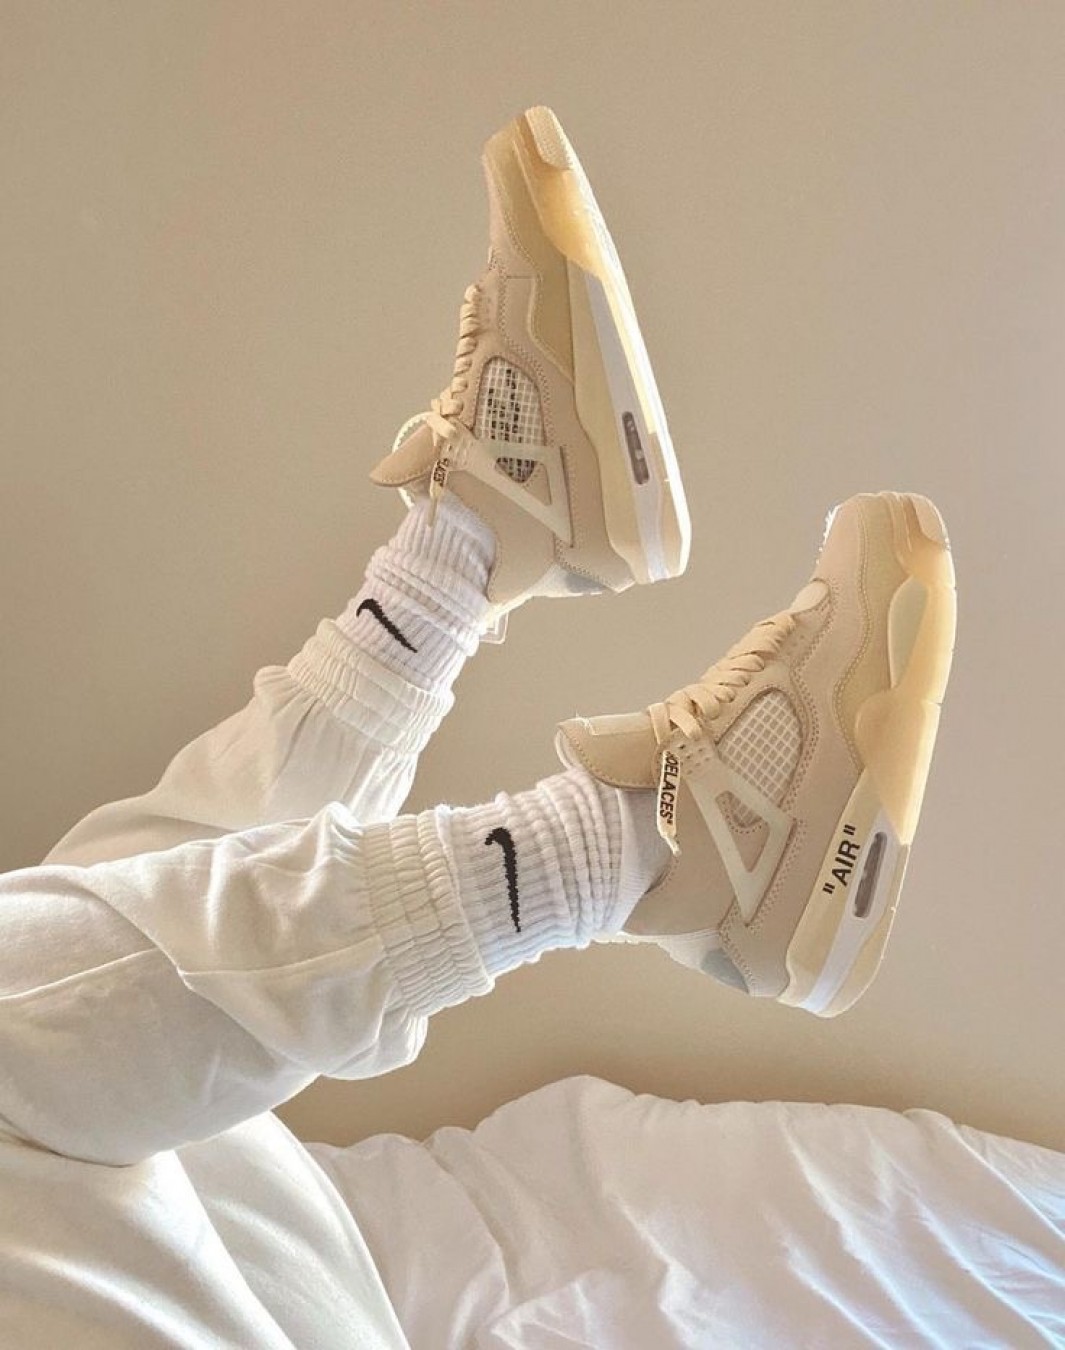 نایکی جردن رترو 4 آف وایت کرم || Nike Jordan Retro 4 Off-white Cream (کد 240)